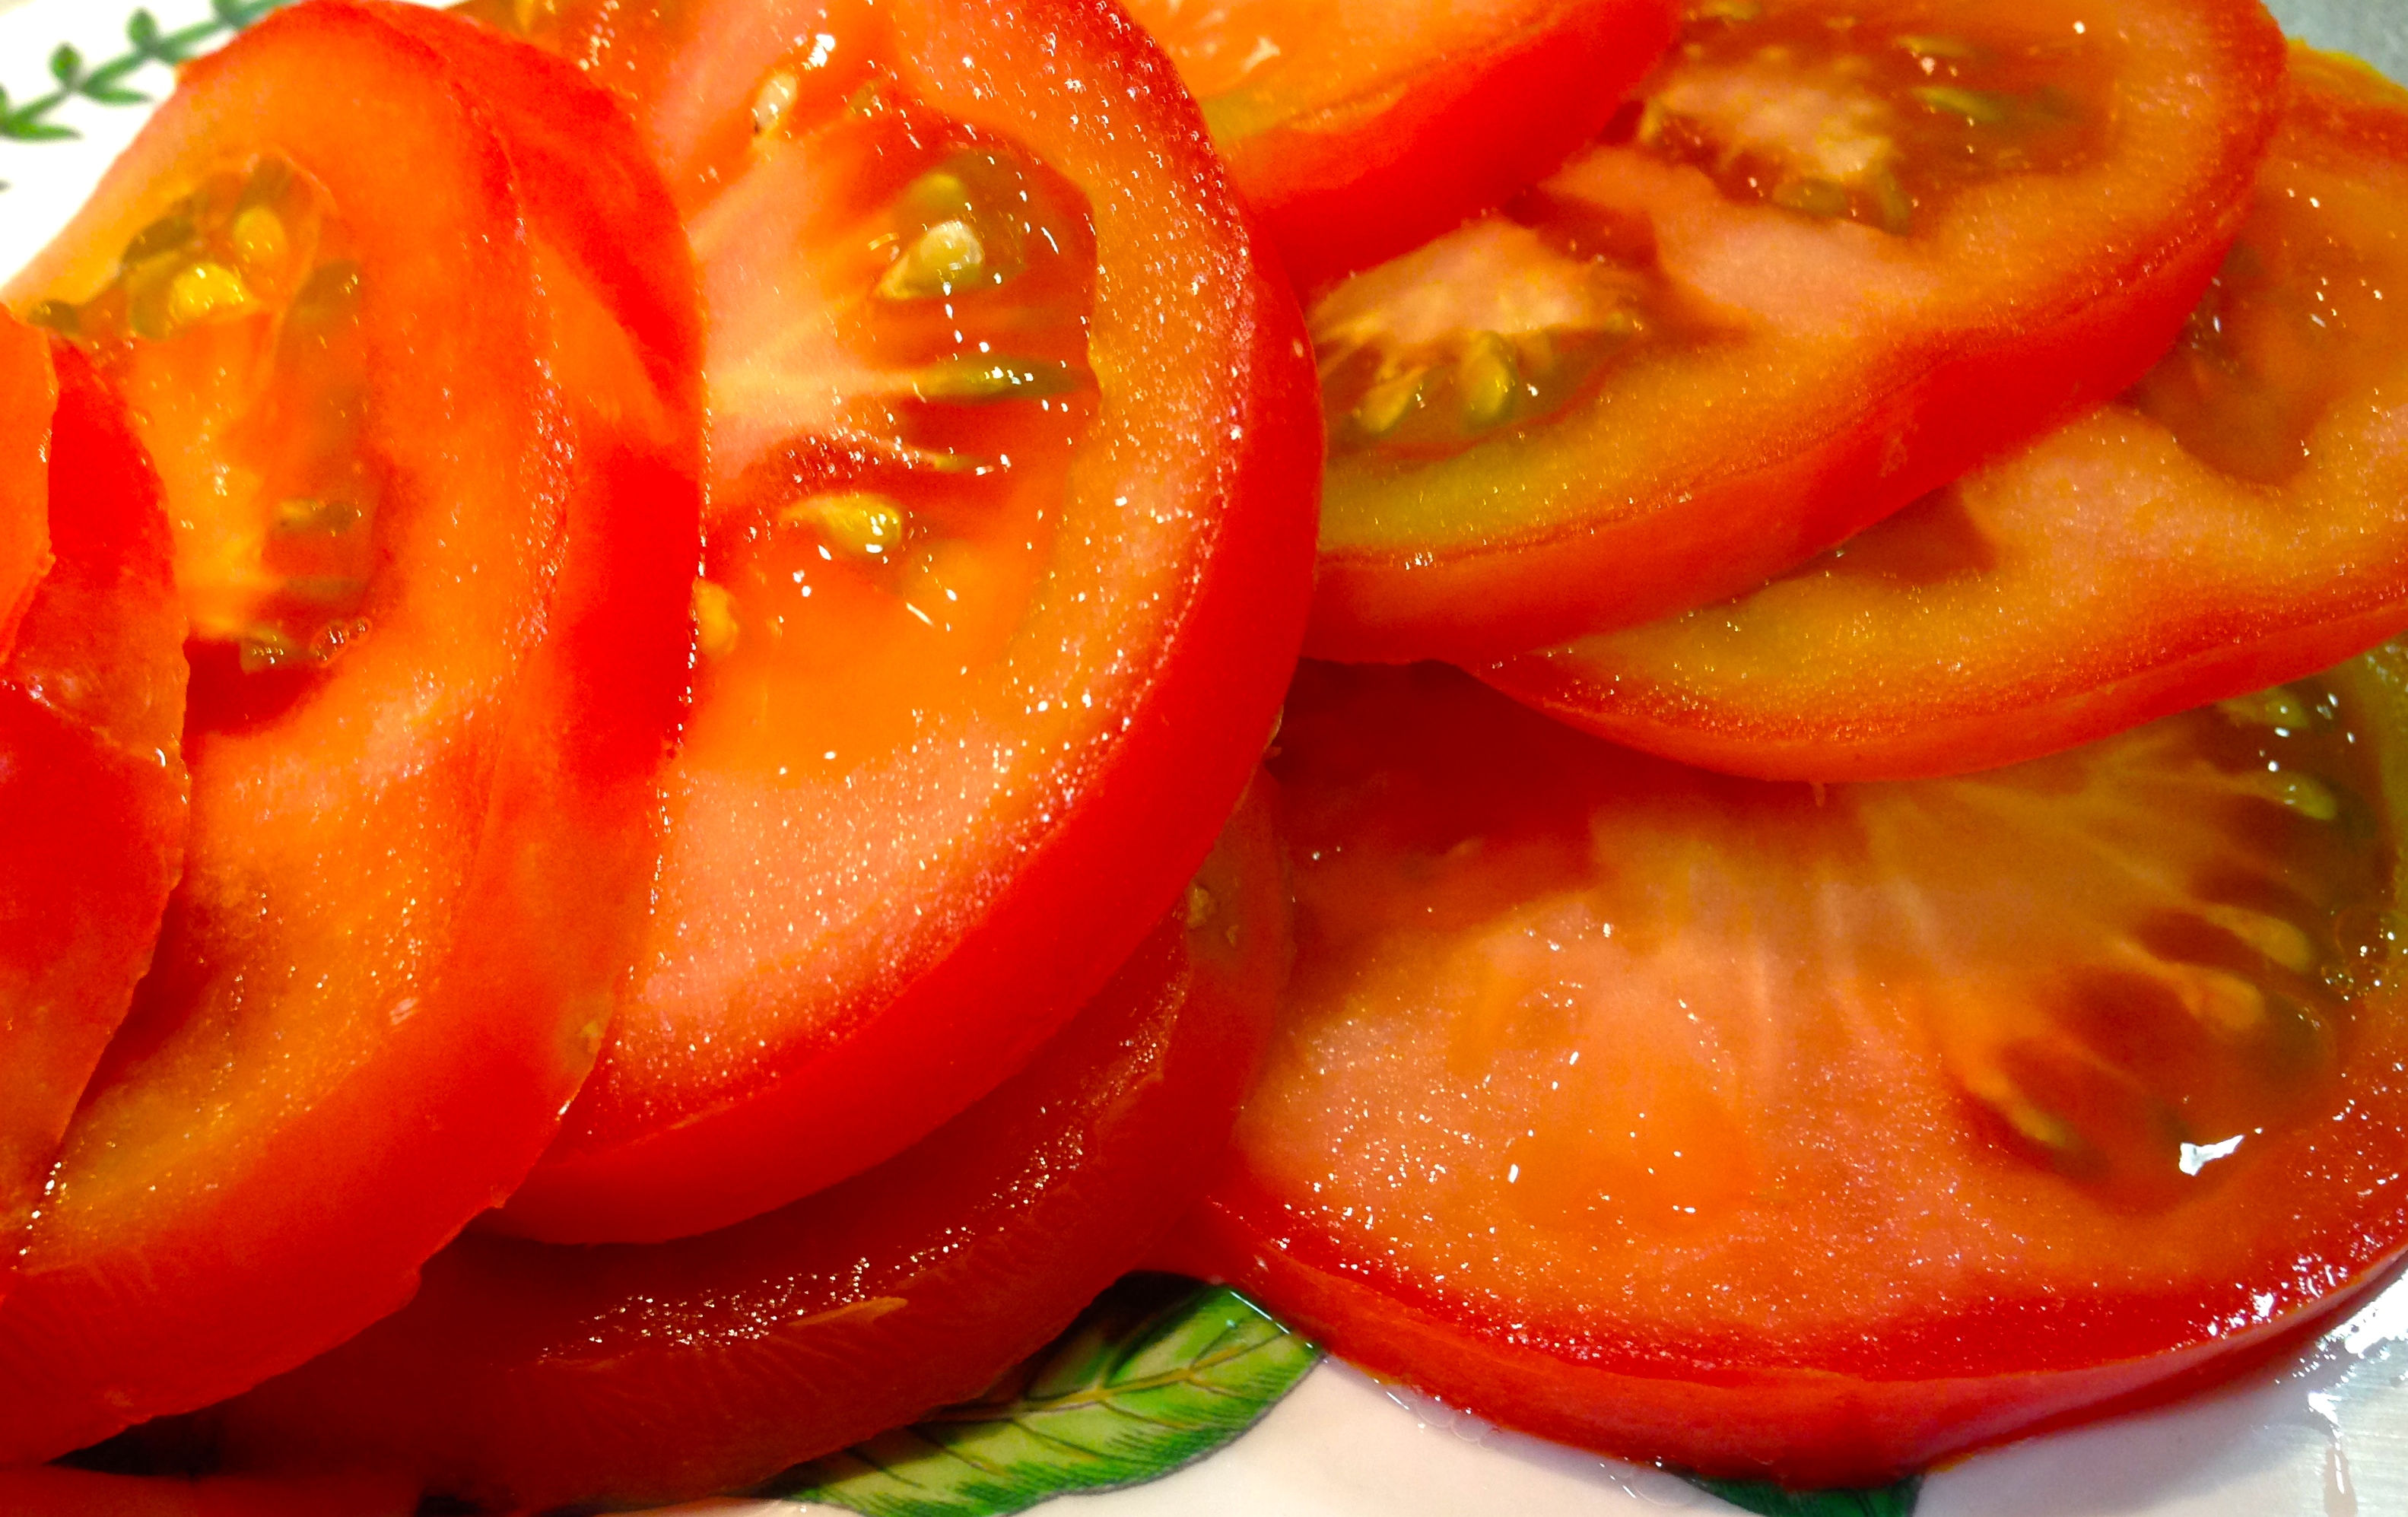 beneficios del tomate